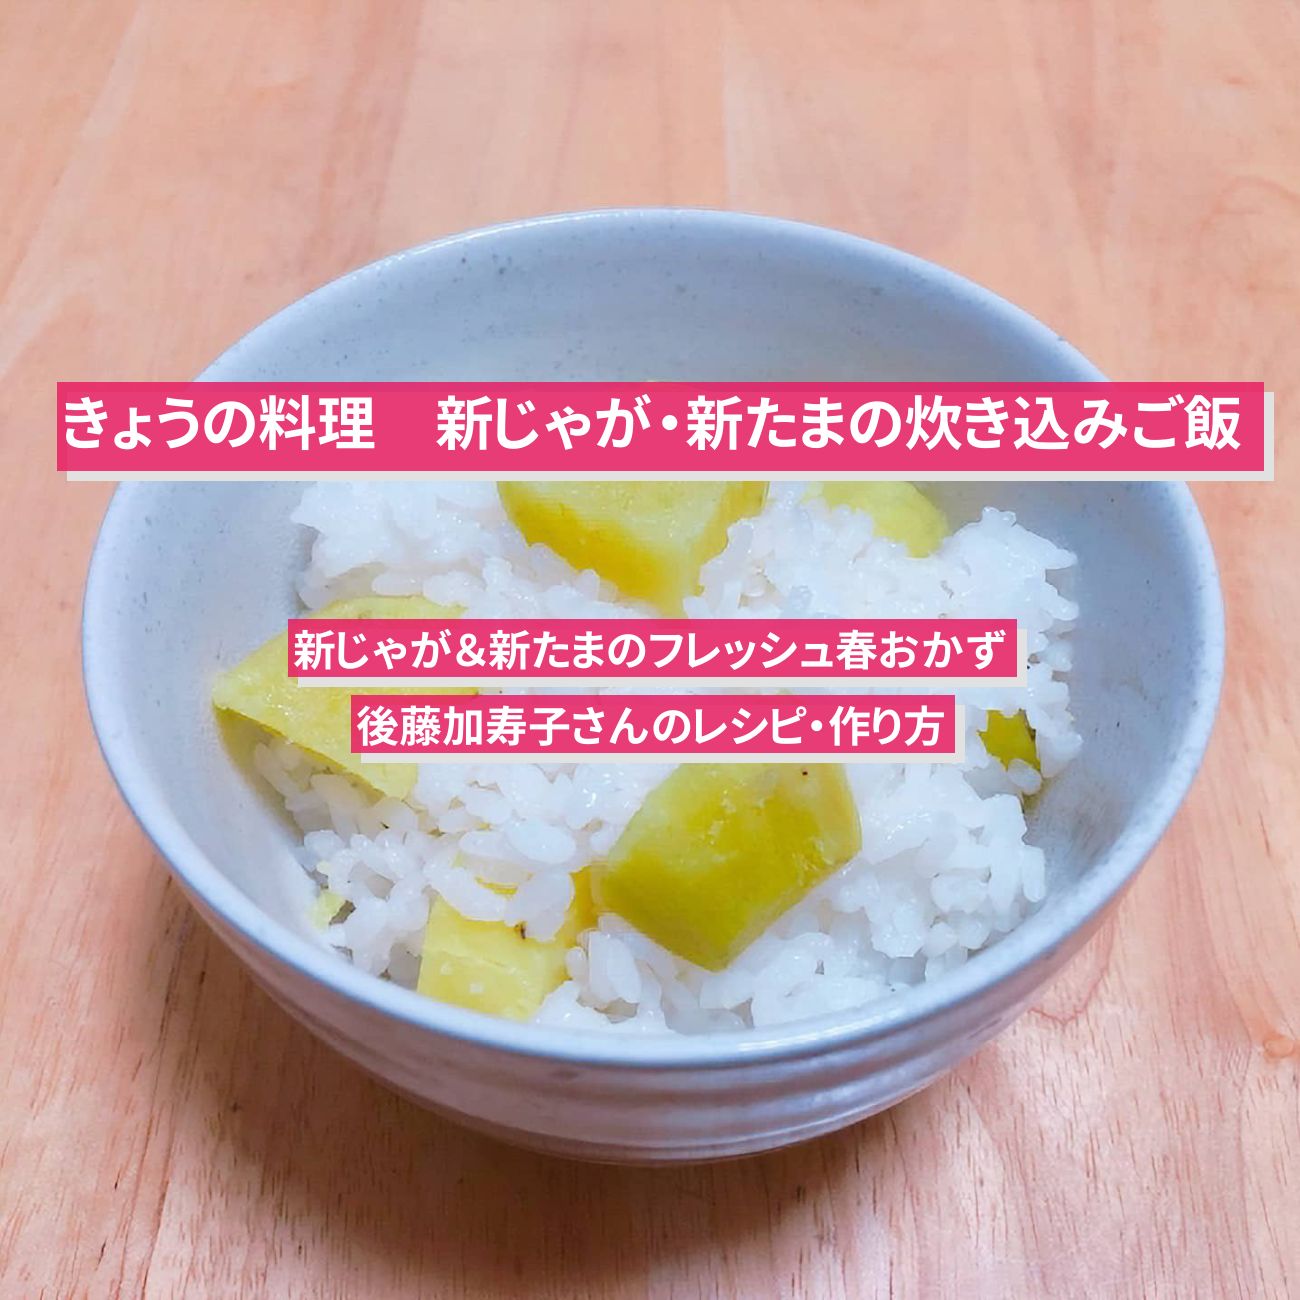 【きょうの料理】『新じゃがいも・新玉ねぎの炊き込みご飯』後藤加寿子さんのレシピ・作り方